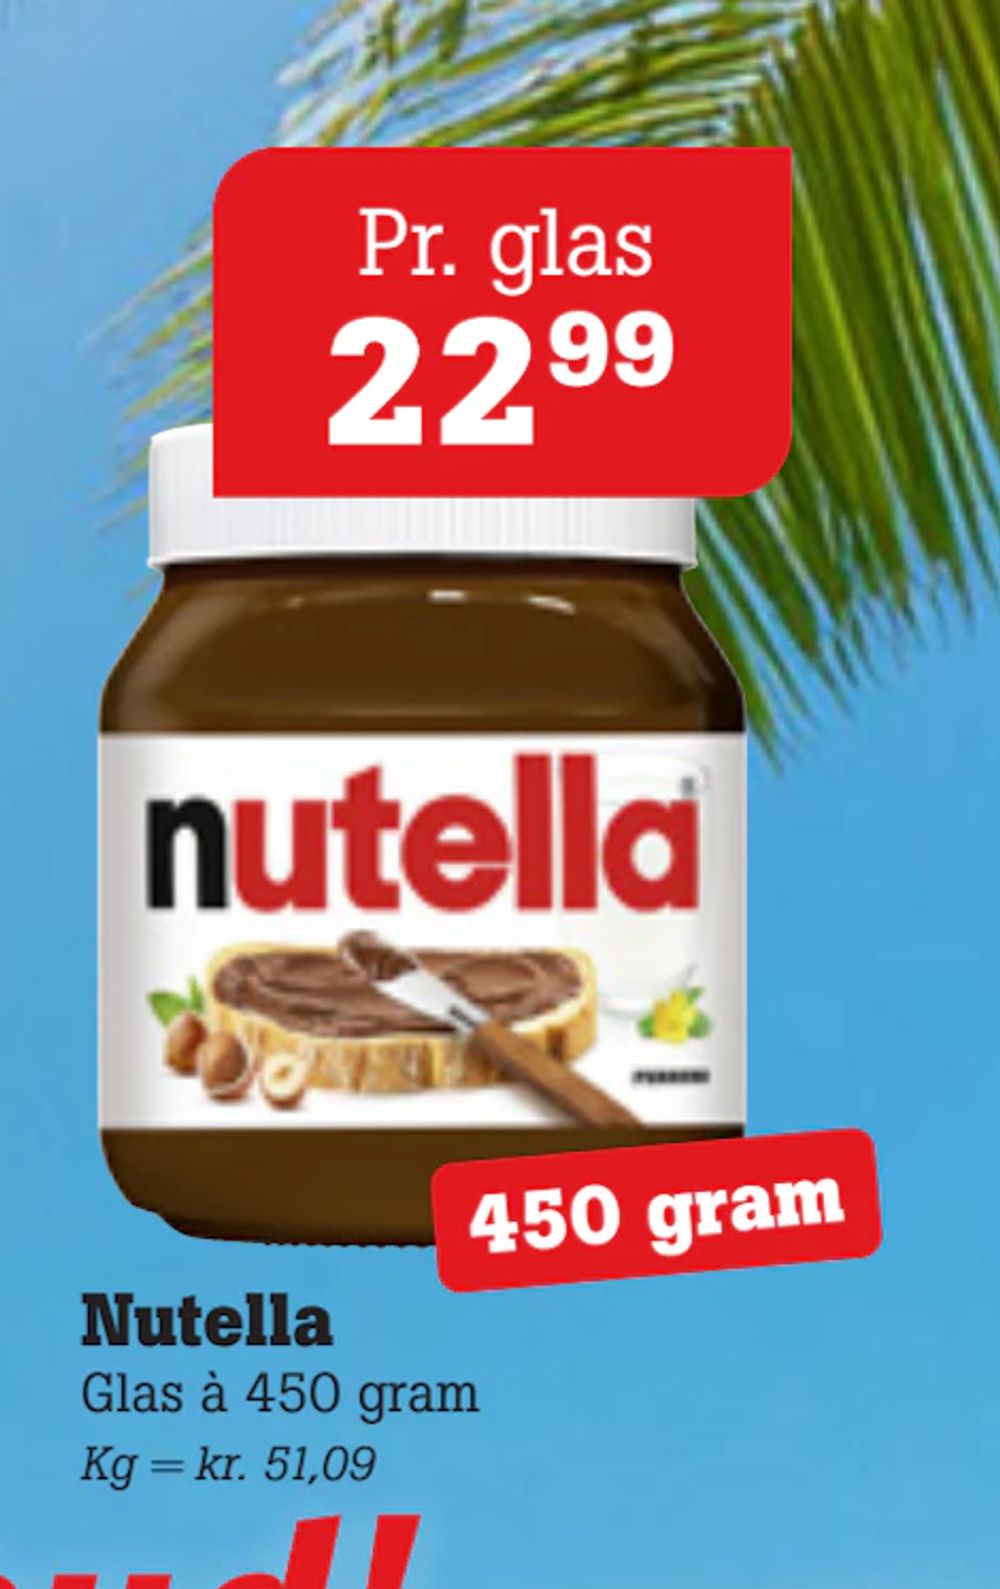 Tilbud på Nutella fra Poetzsch Padborg til 22,99 kr.